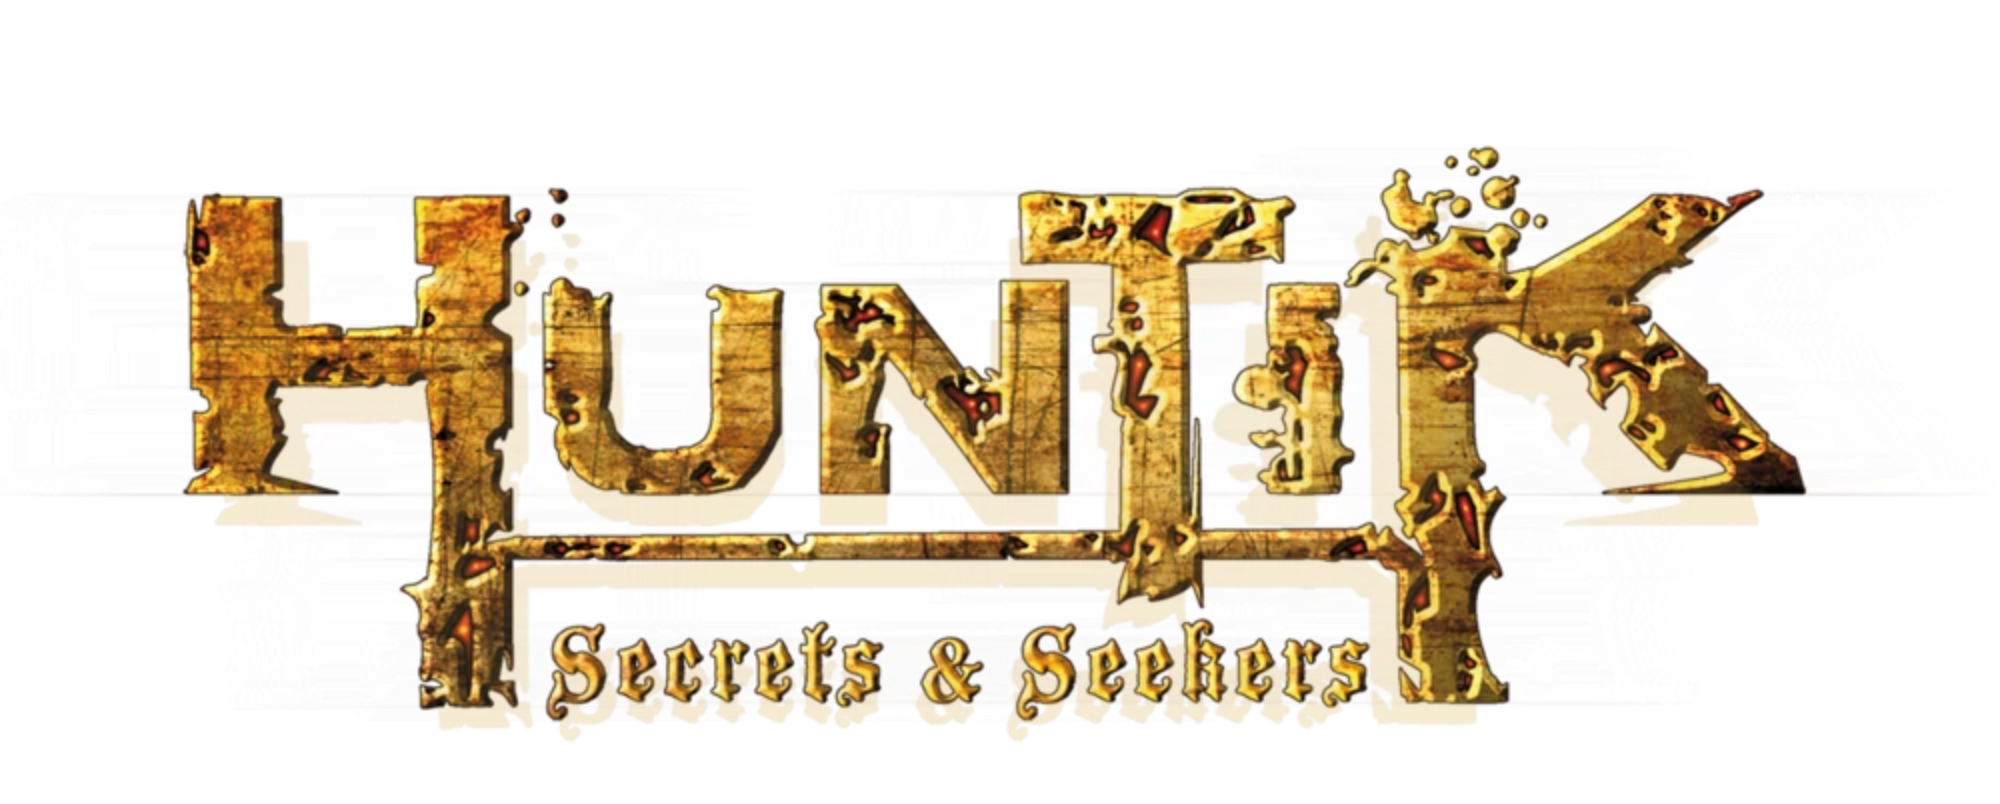 Huntik: Secrets & Seekers Complete 